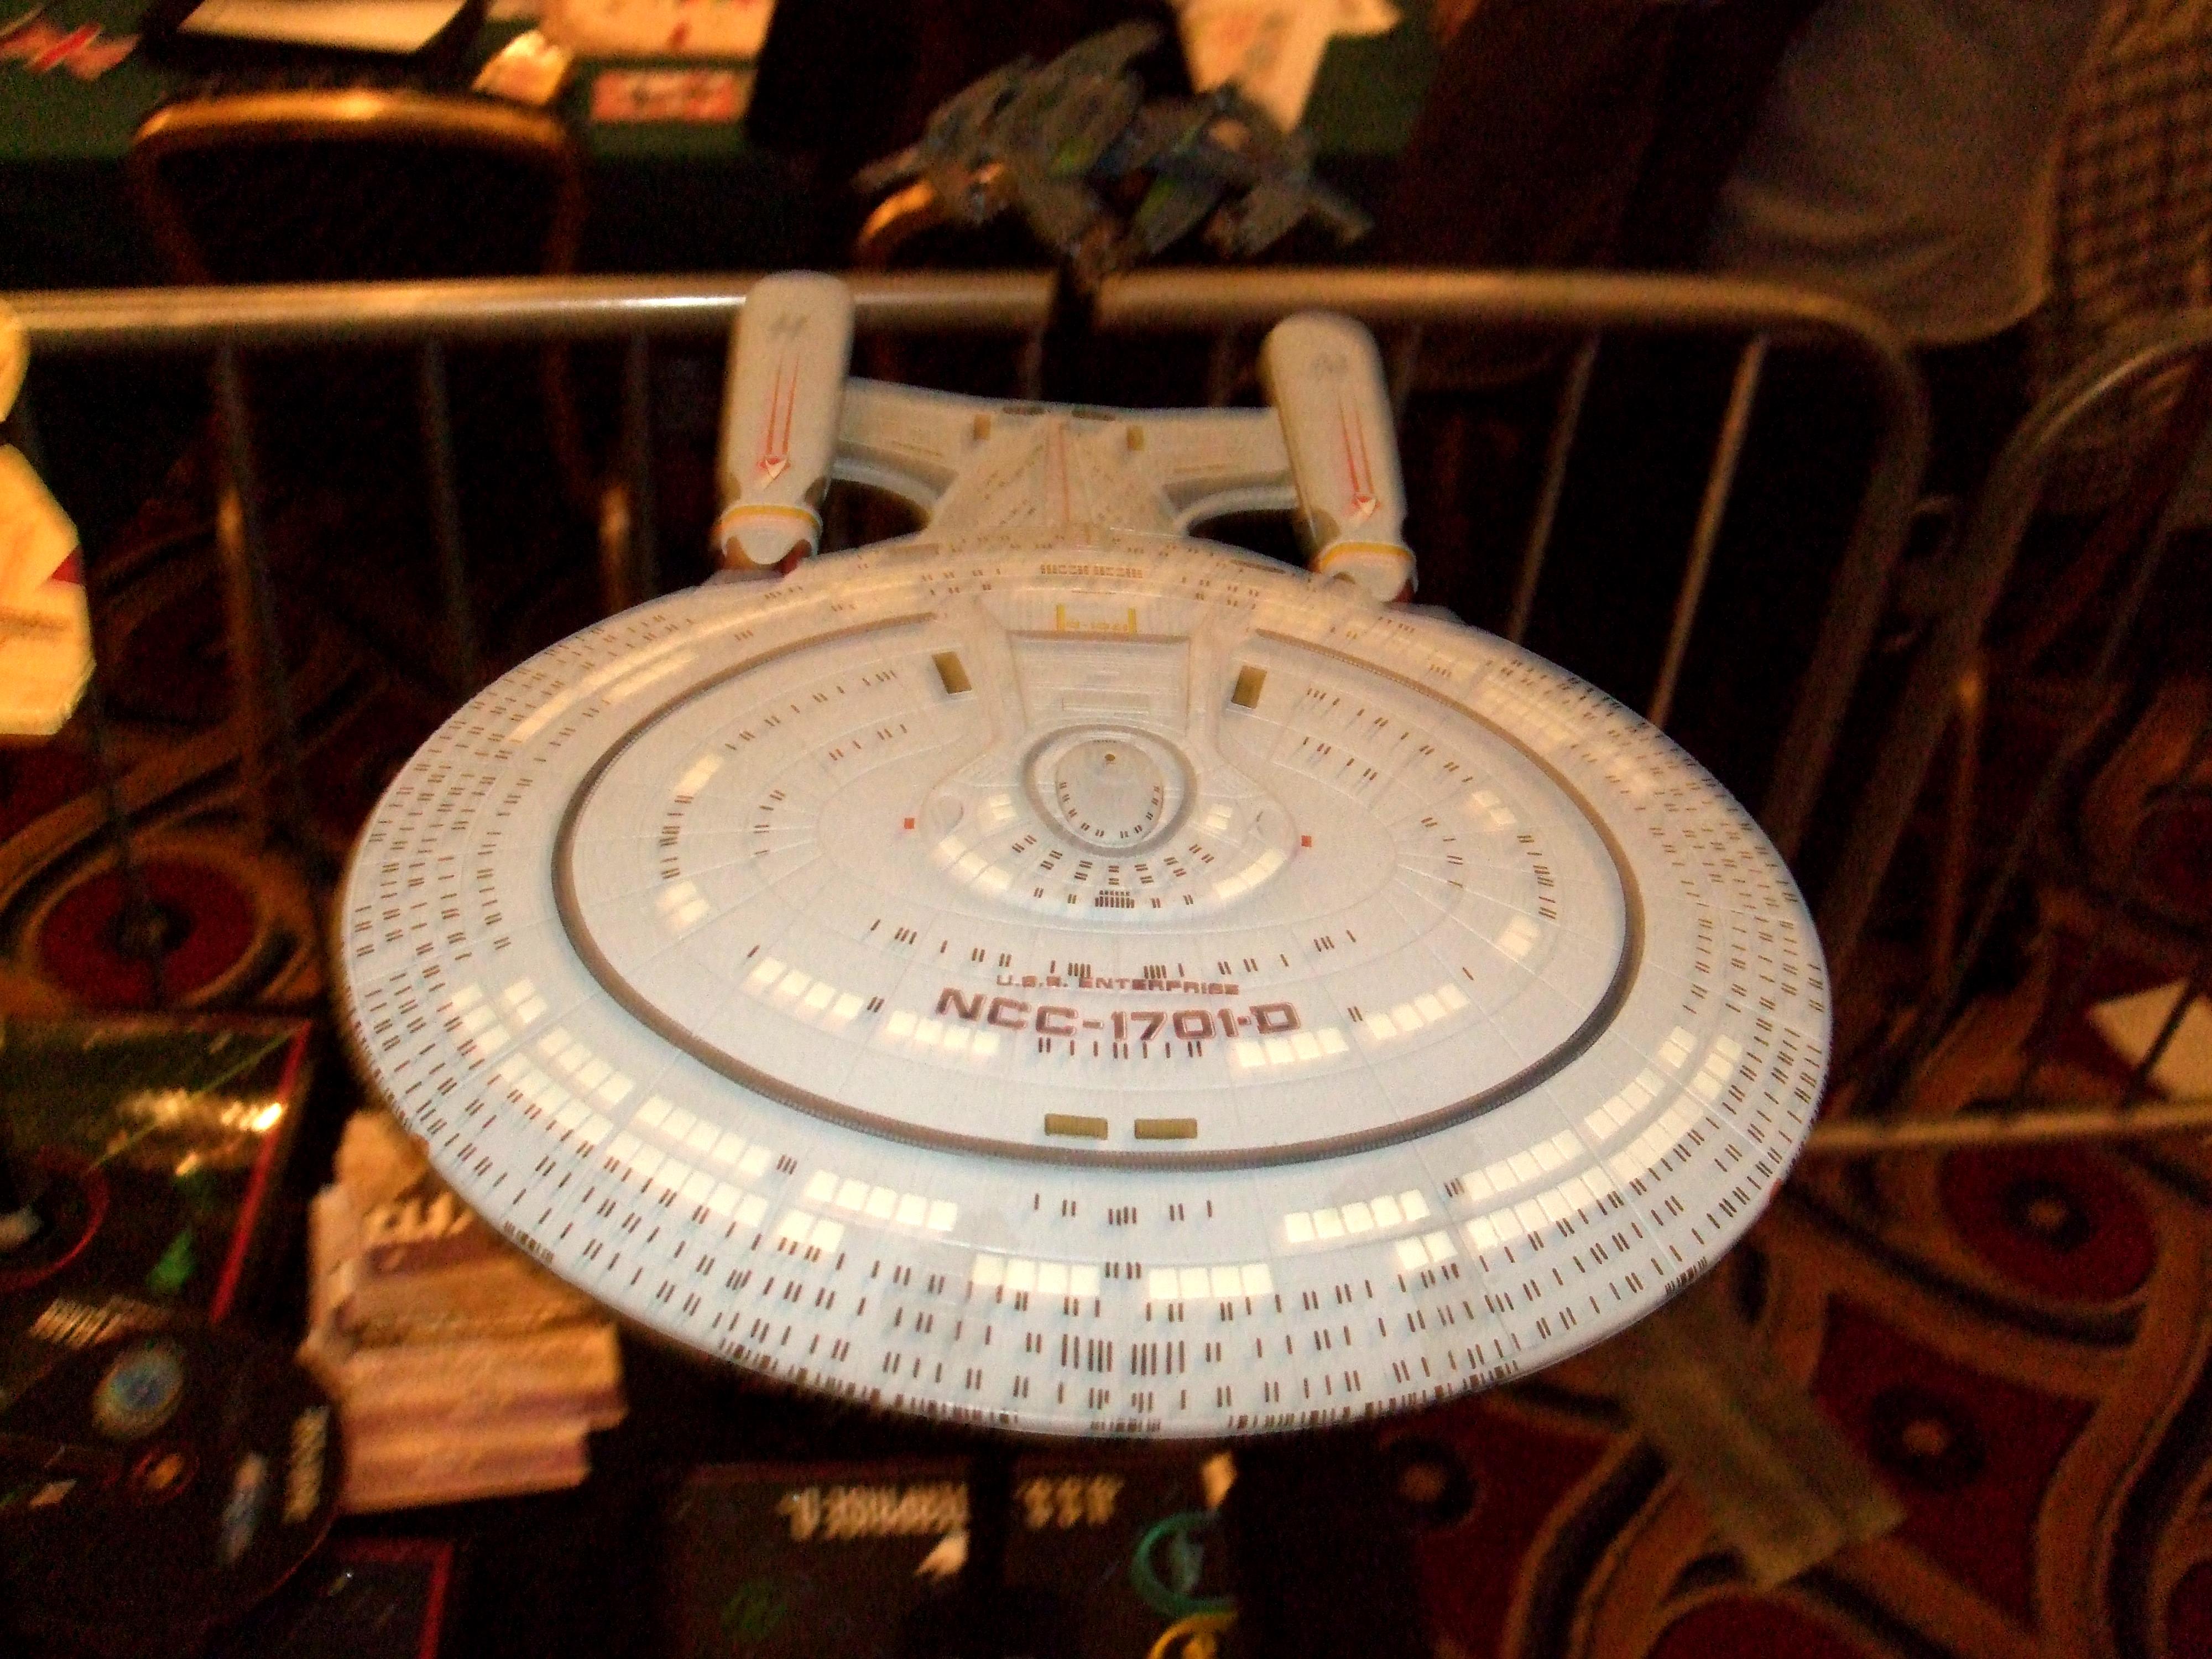 Enterprise, Star Trek, Tng